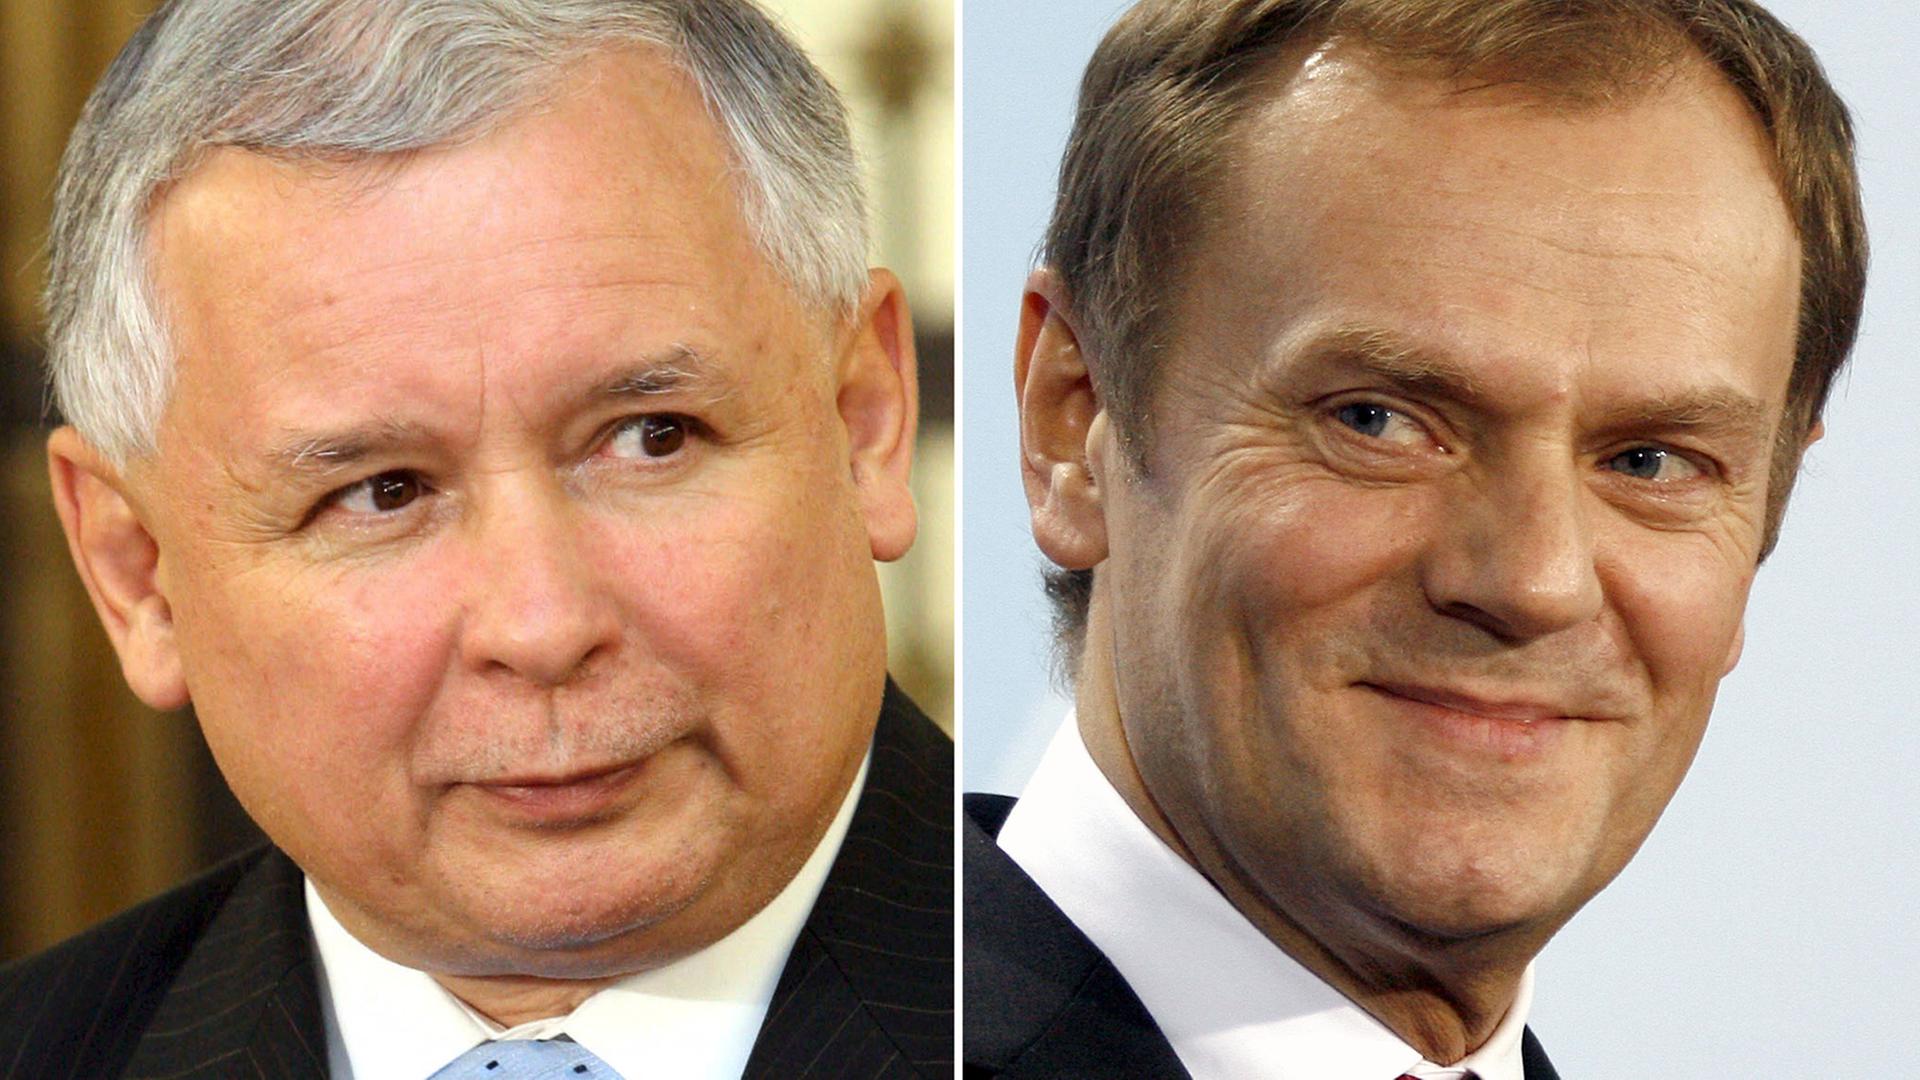 Der polnische PiS-Politiker Jaroslaw Kaczynski und der liberal-konservative Pole Donald Tusk - Tusk ist seit 2014 Präsident des Europäischen Rates.